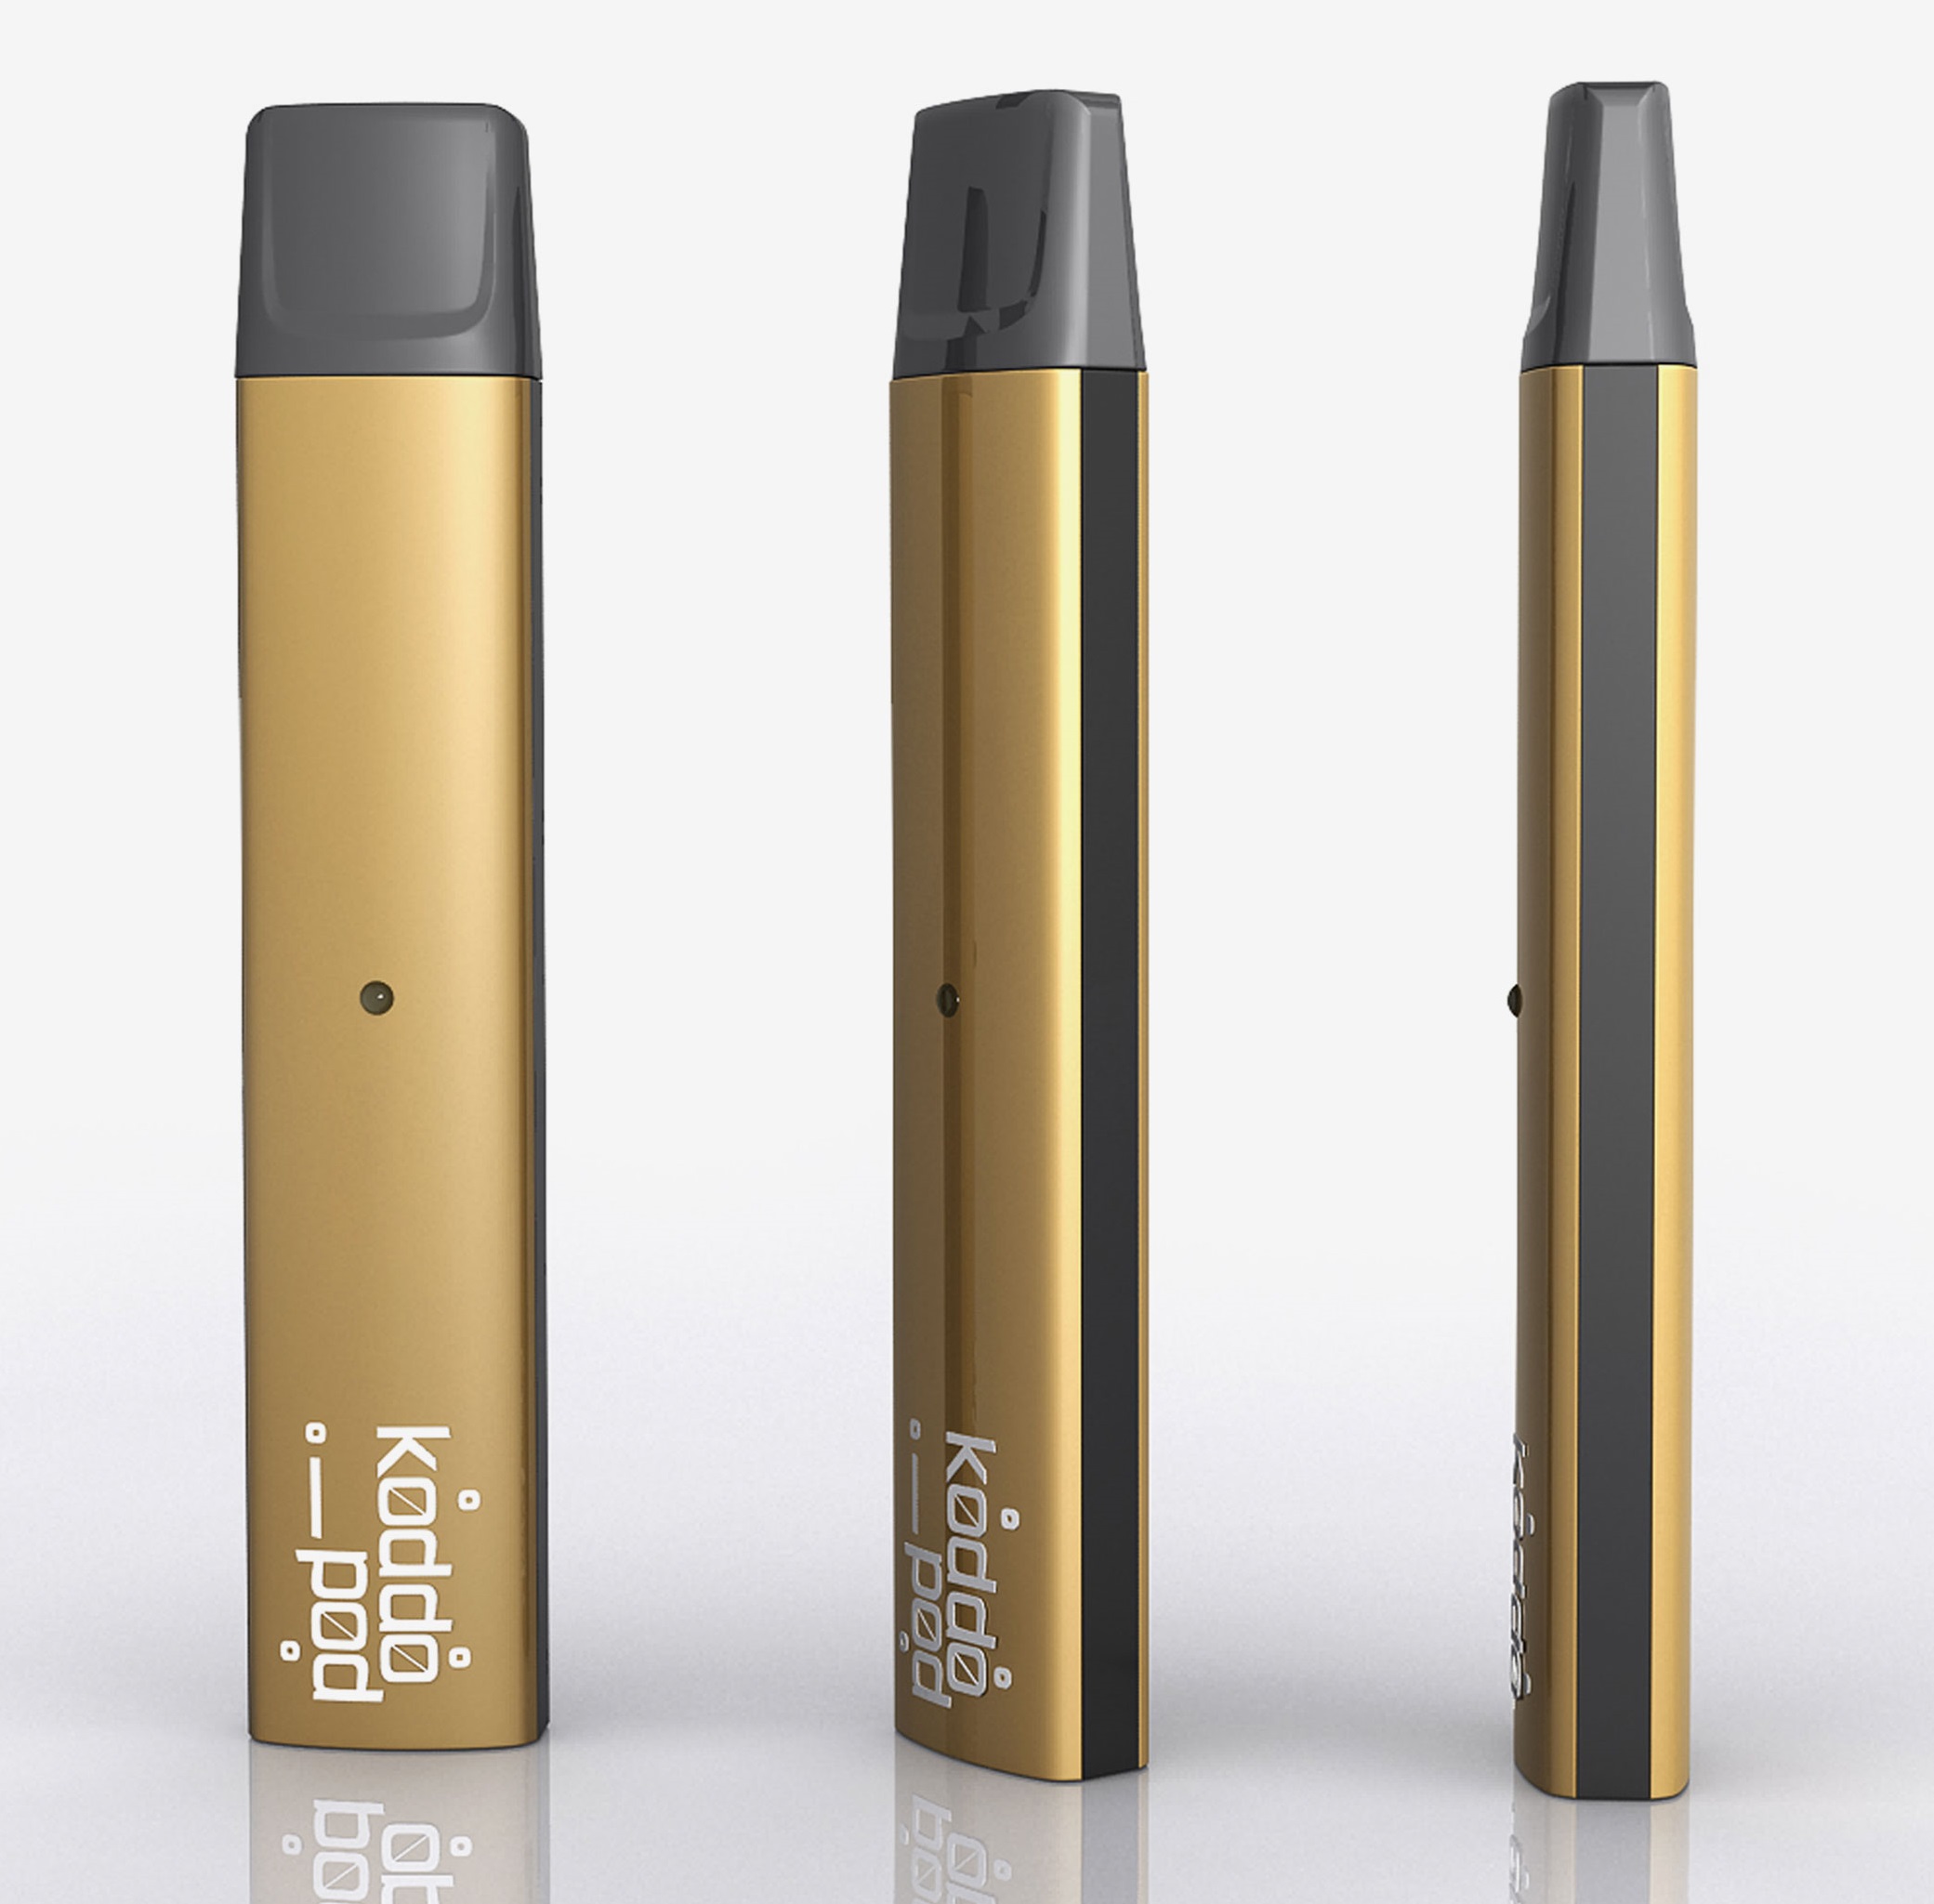 koddopro nano e zigaretten 350mah design und kompakt